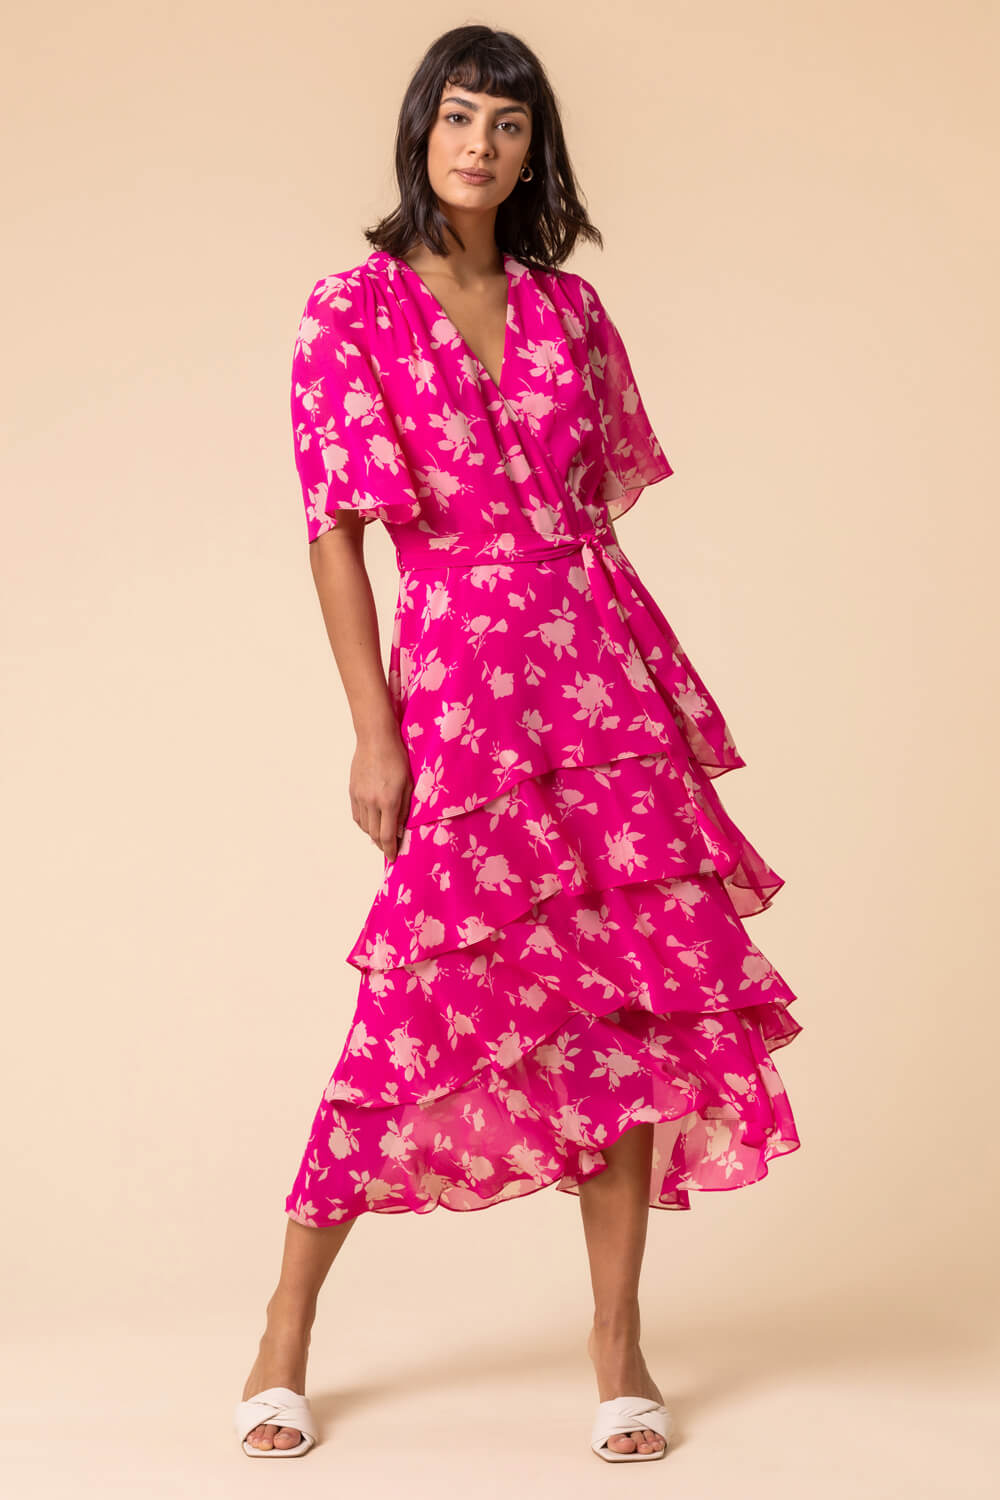 Floral Print Tiered Frill Midi Dress in Pink - Roman Originals UK